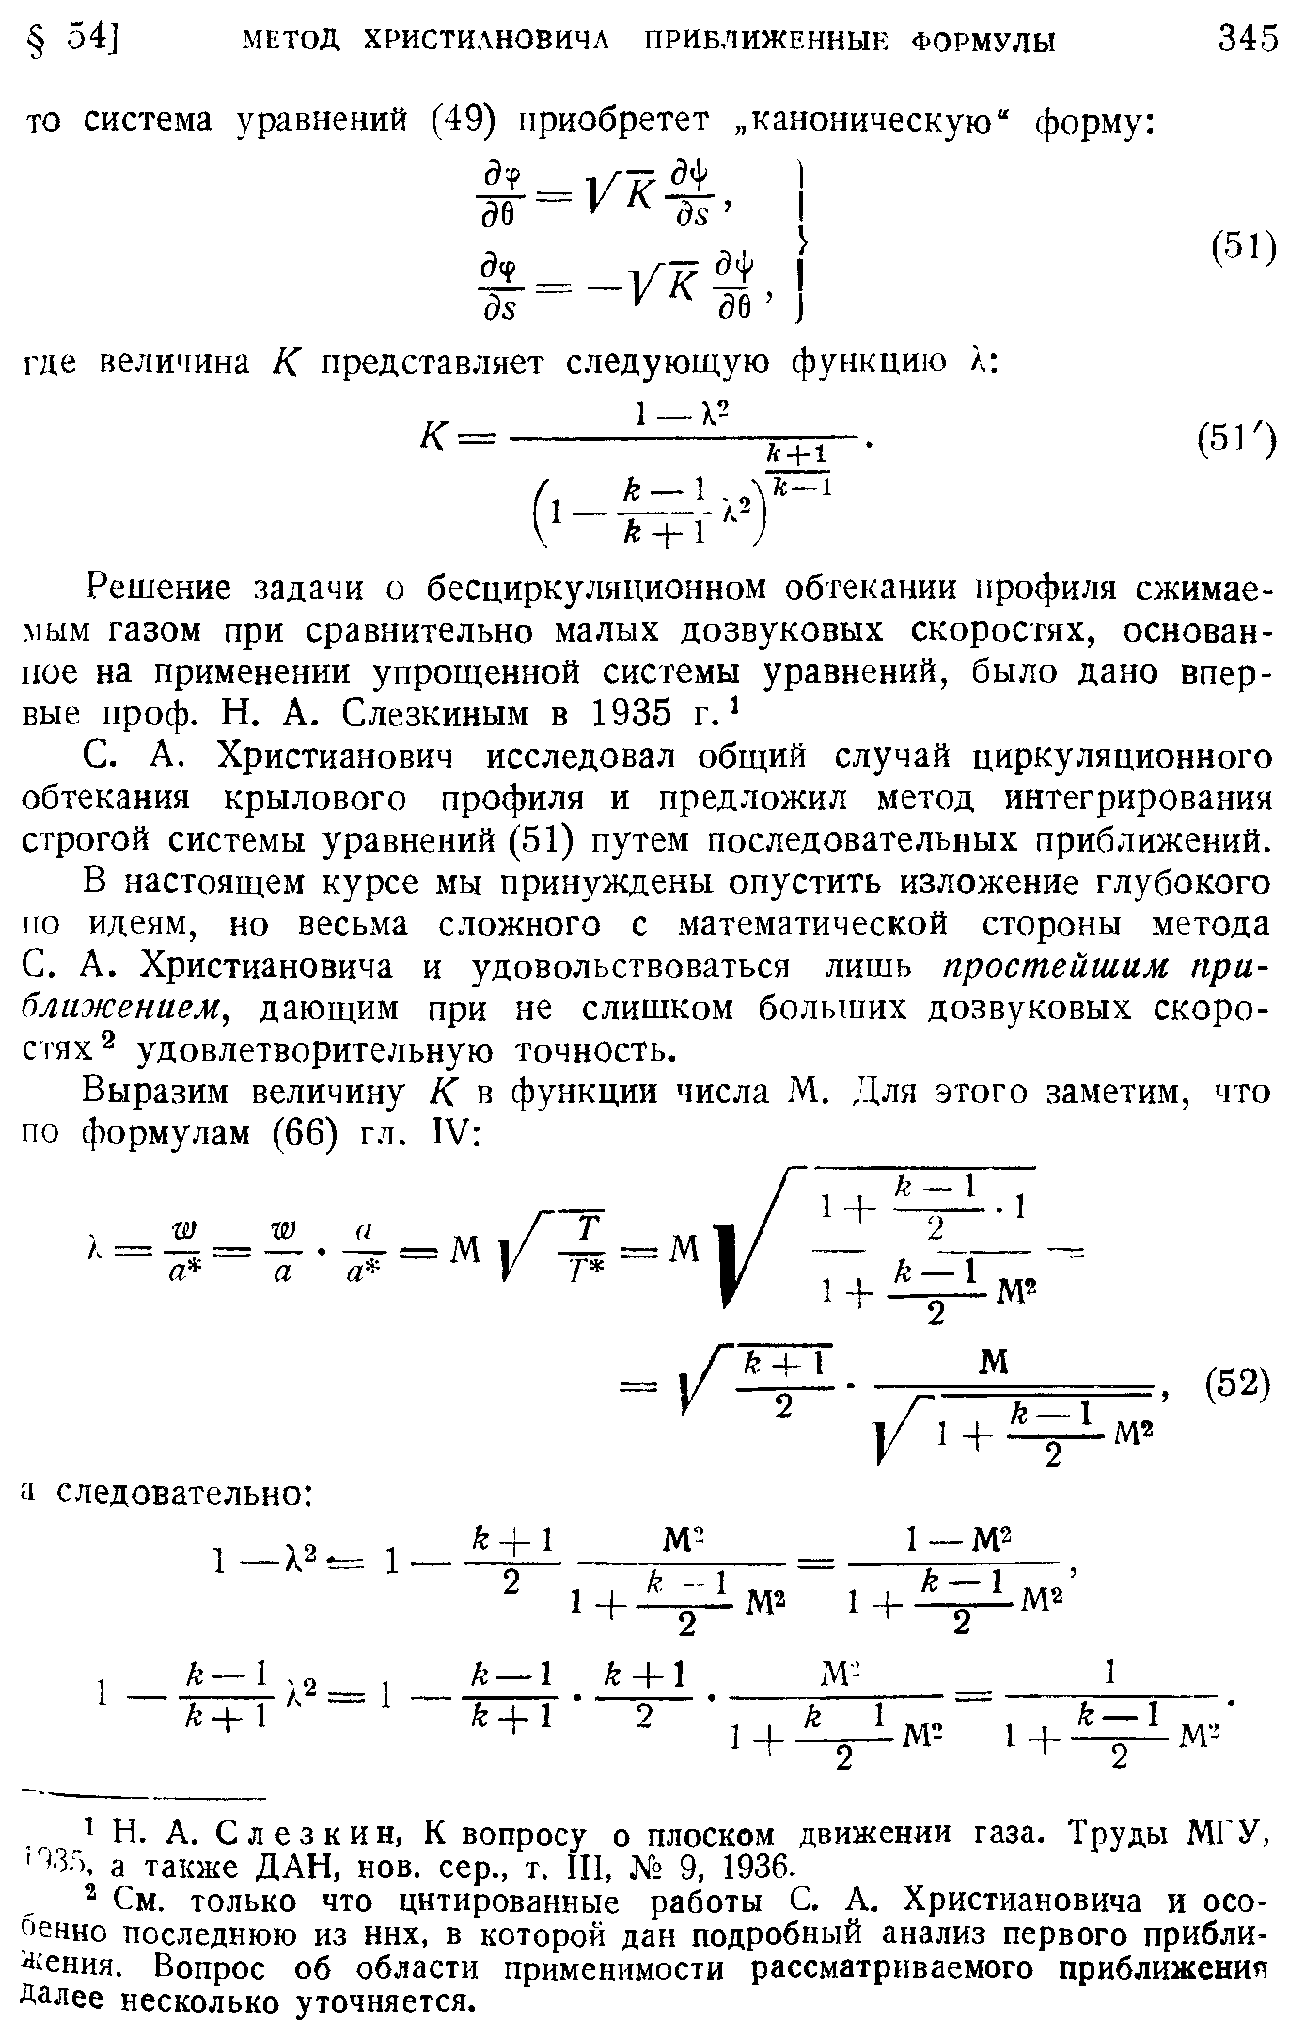 Христианович исследовал общий случай циркуляционного обтекания крылового профиля и предложил метод интегрирования строгой системы уравнений (51) путем последовательных приближений.
